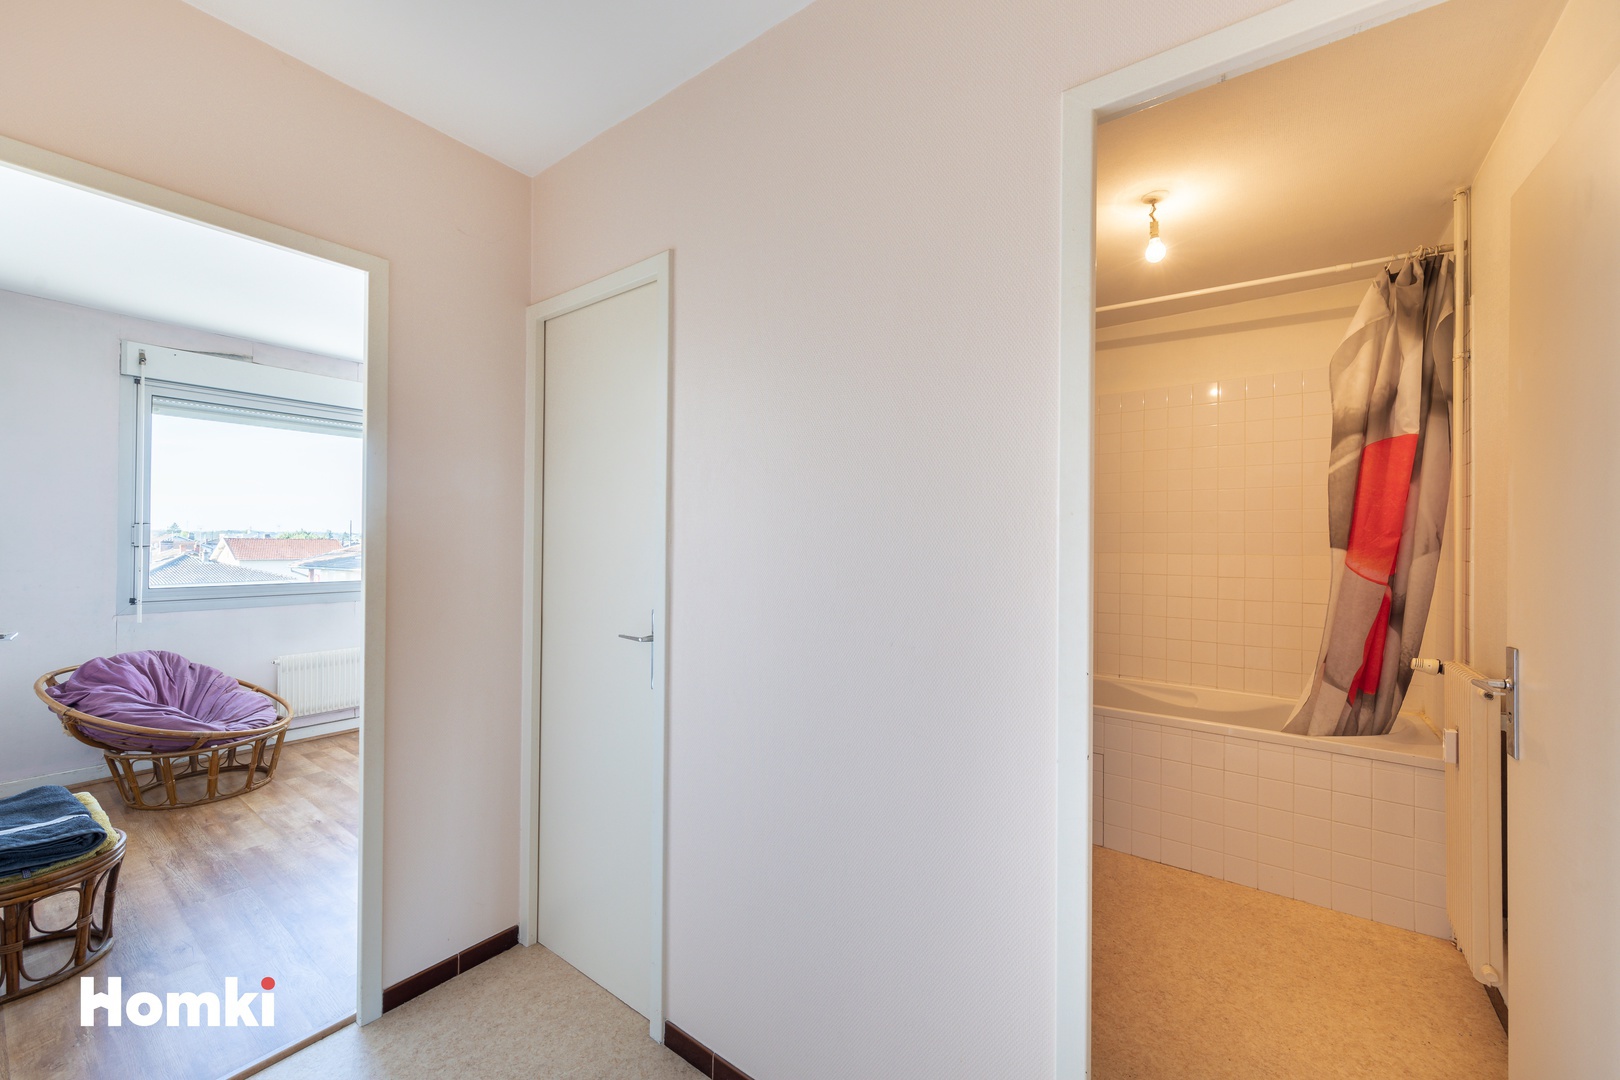 Homki - Vente Appartement  de 69.0 m² à Péronnas 01960